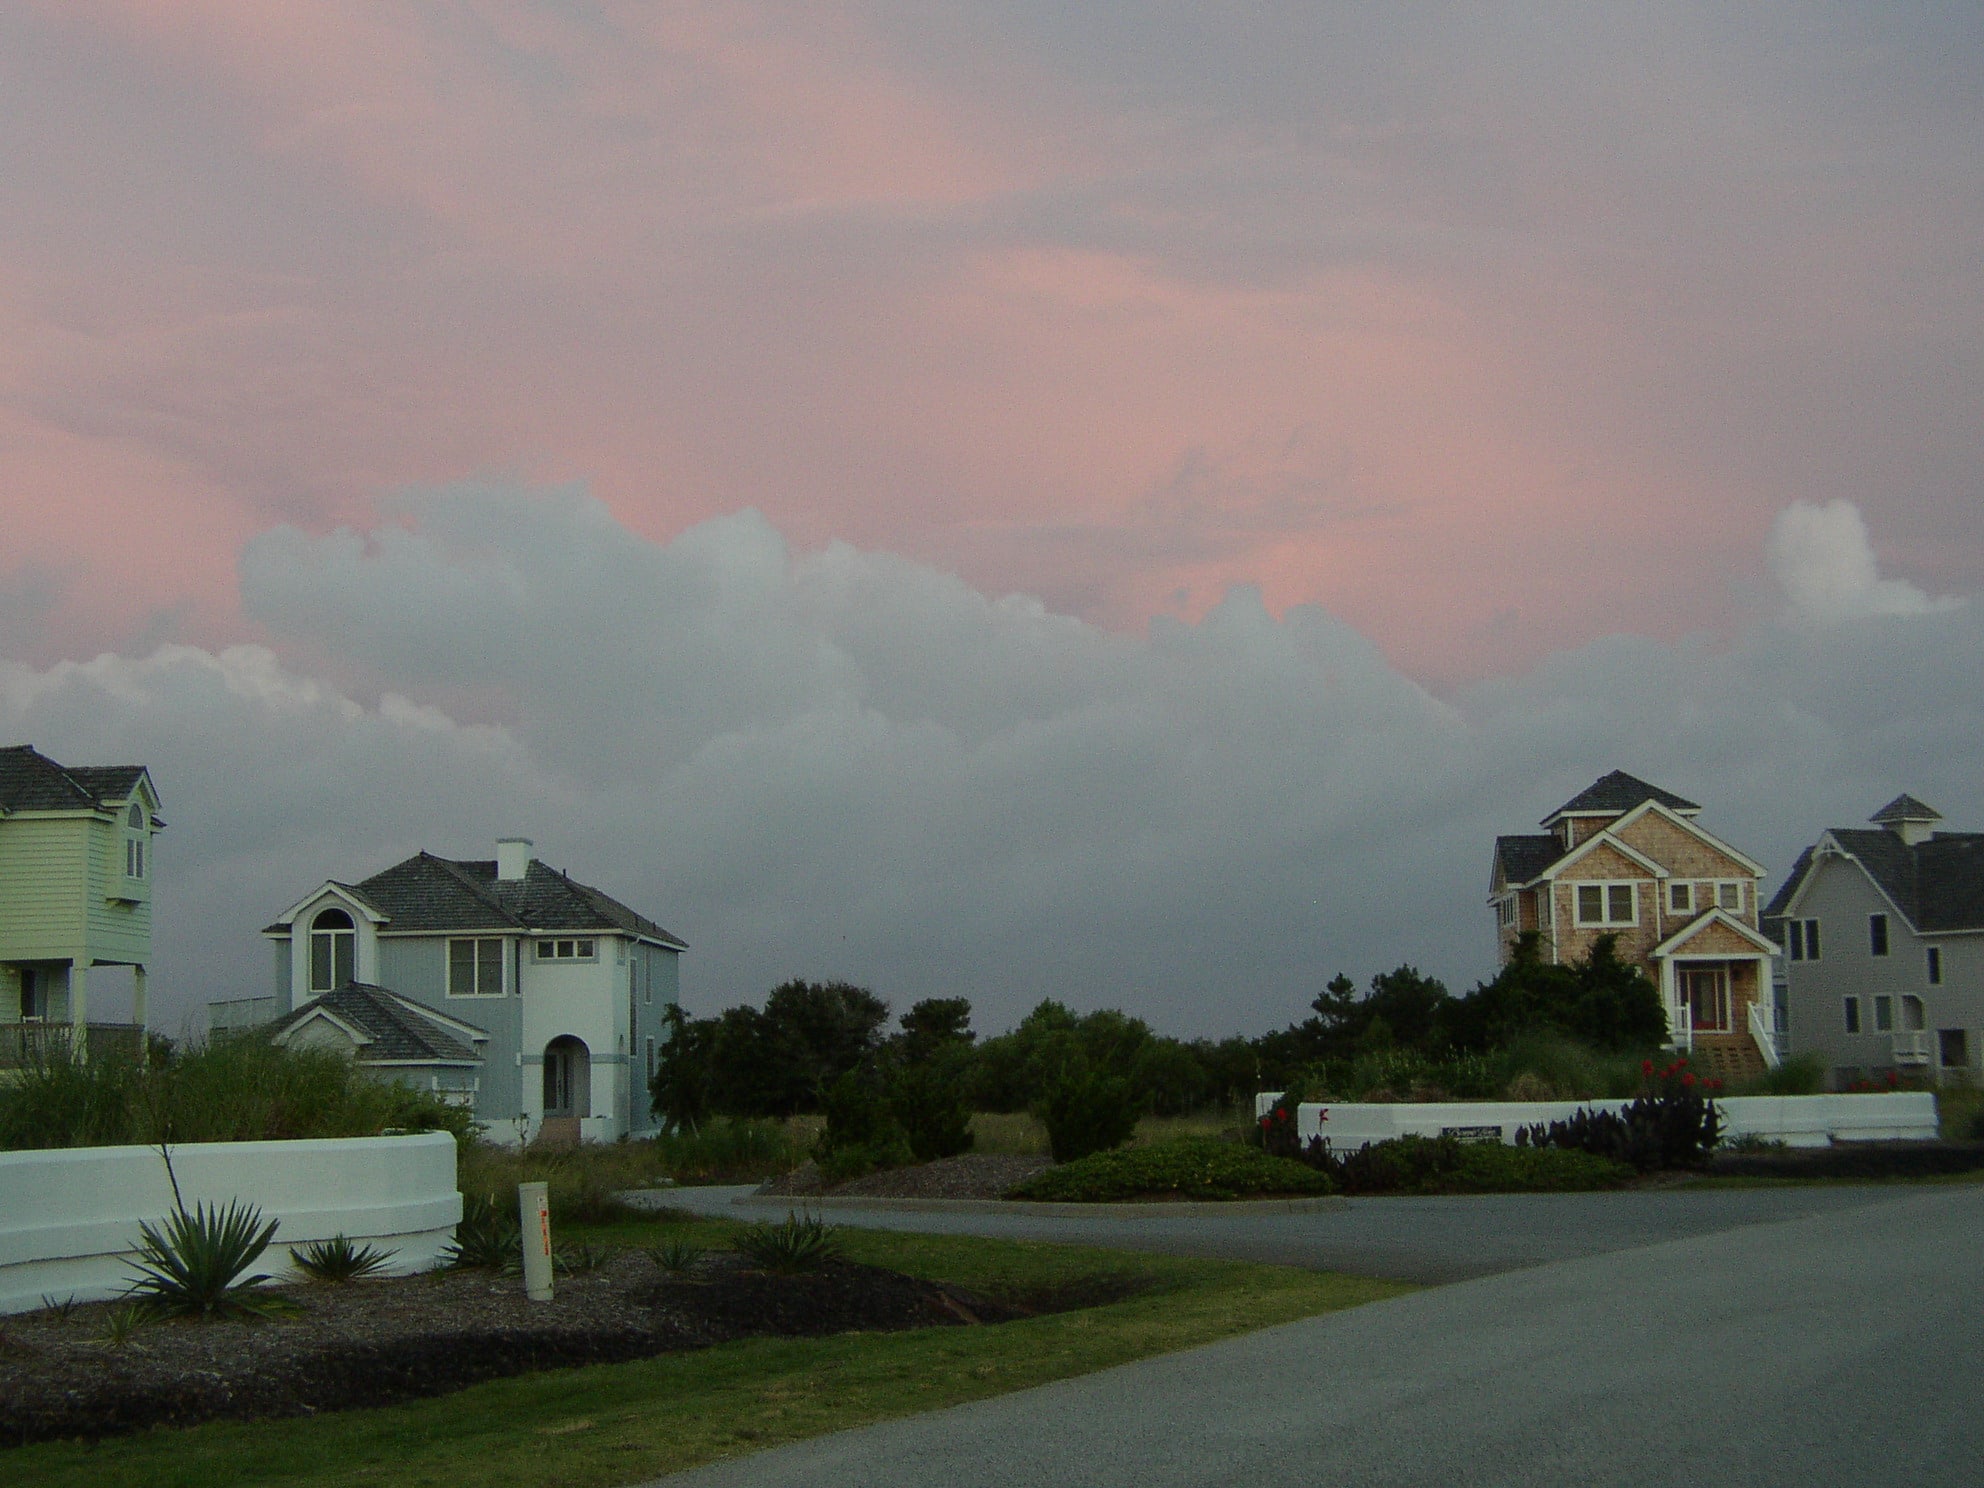 Sunset at the Outer Banks - North Carolina